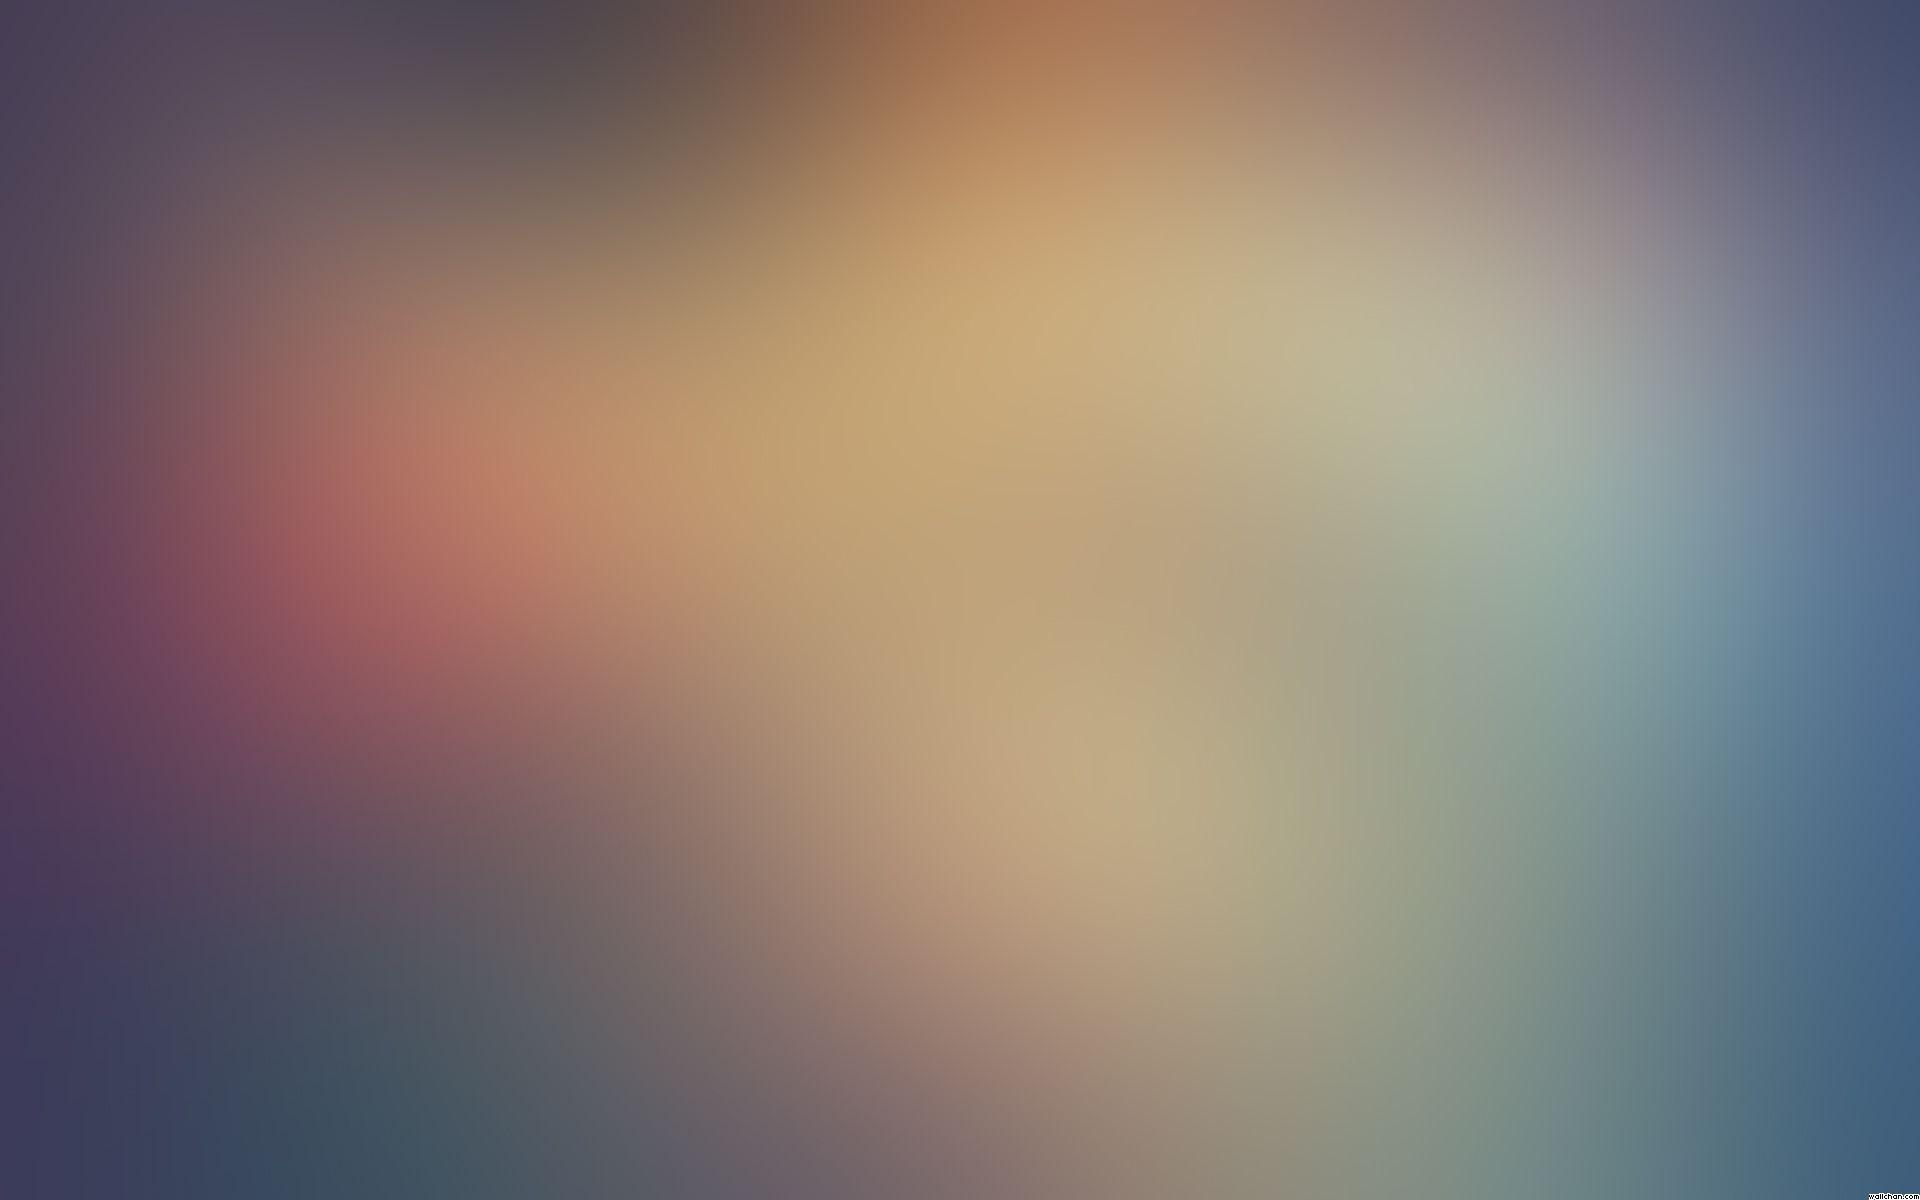 3D & Abstract Blur wallpaper (Desktop, Phone, Tablet)